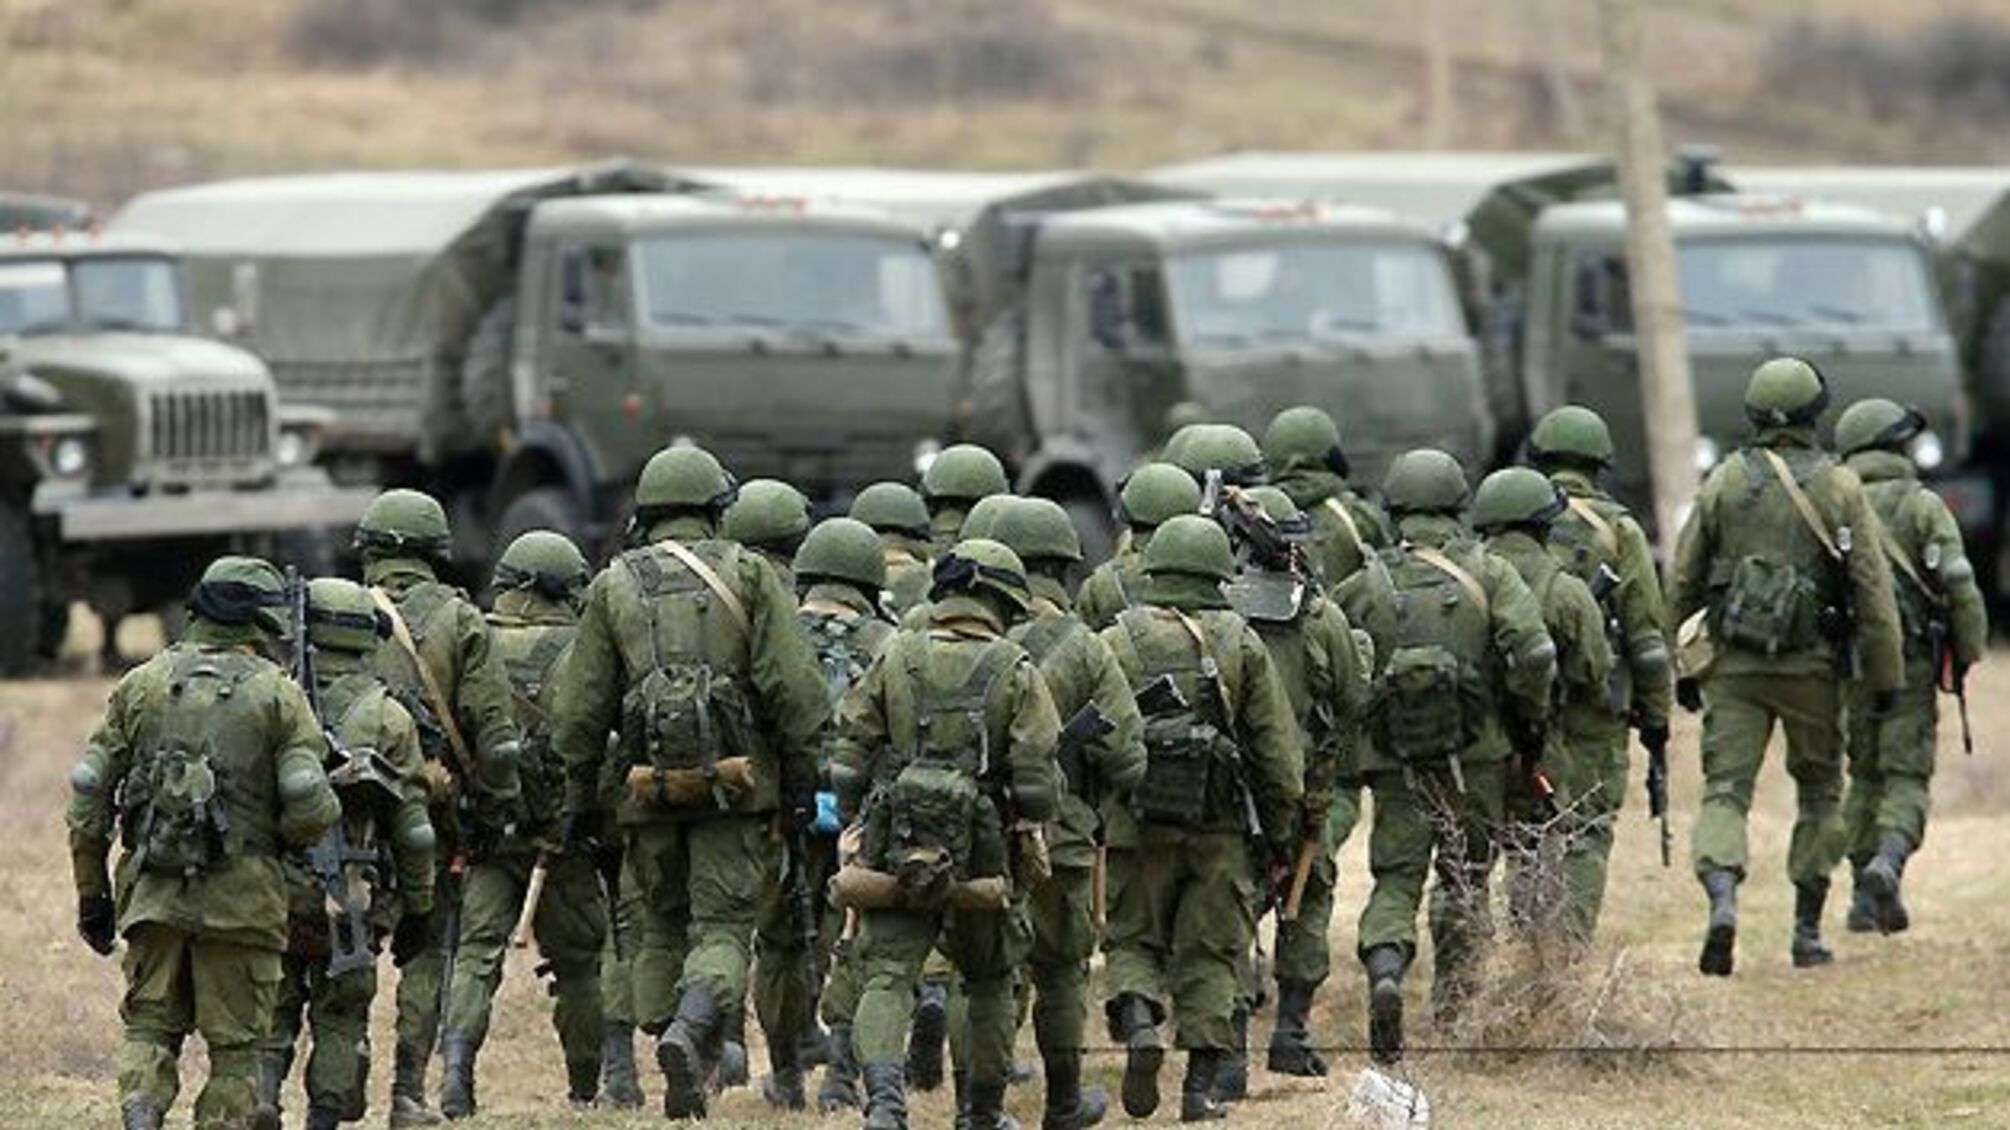 Ще 17 батальйонних груп стягнула росія за останній тиждень – Пентагон